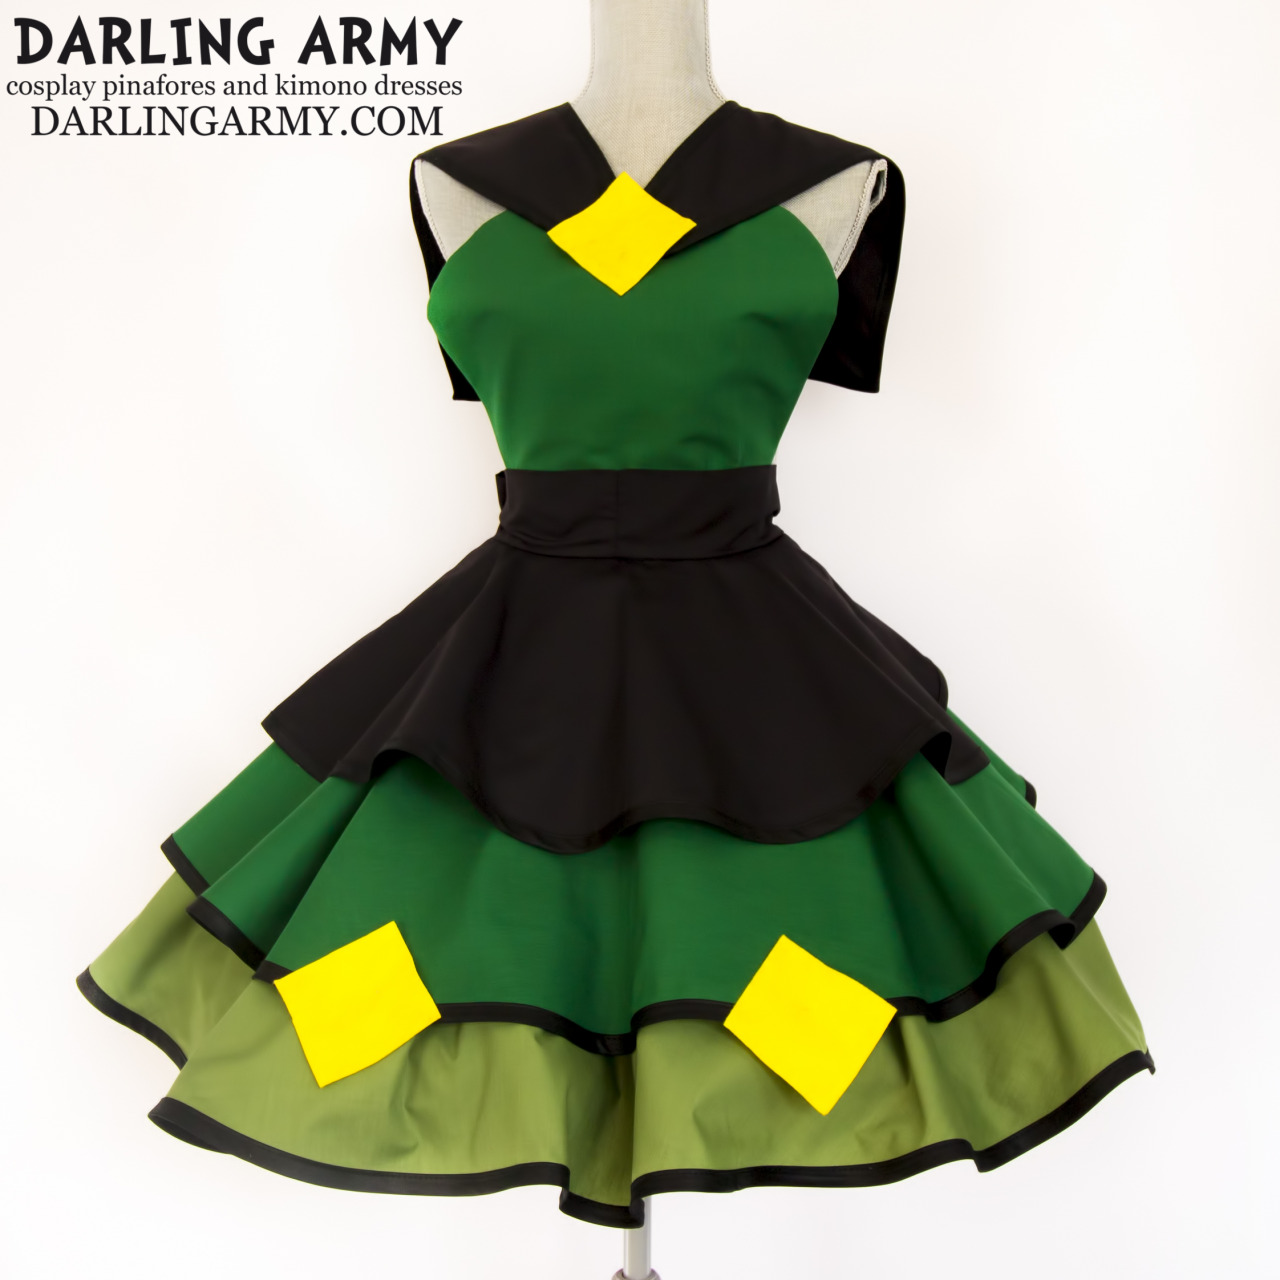 darlingarmy:   Peridot Steven Universe Sailor Collar Cosplay Pinafore Dress by Darling